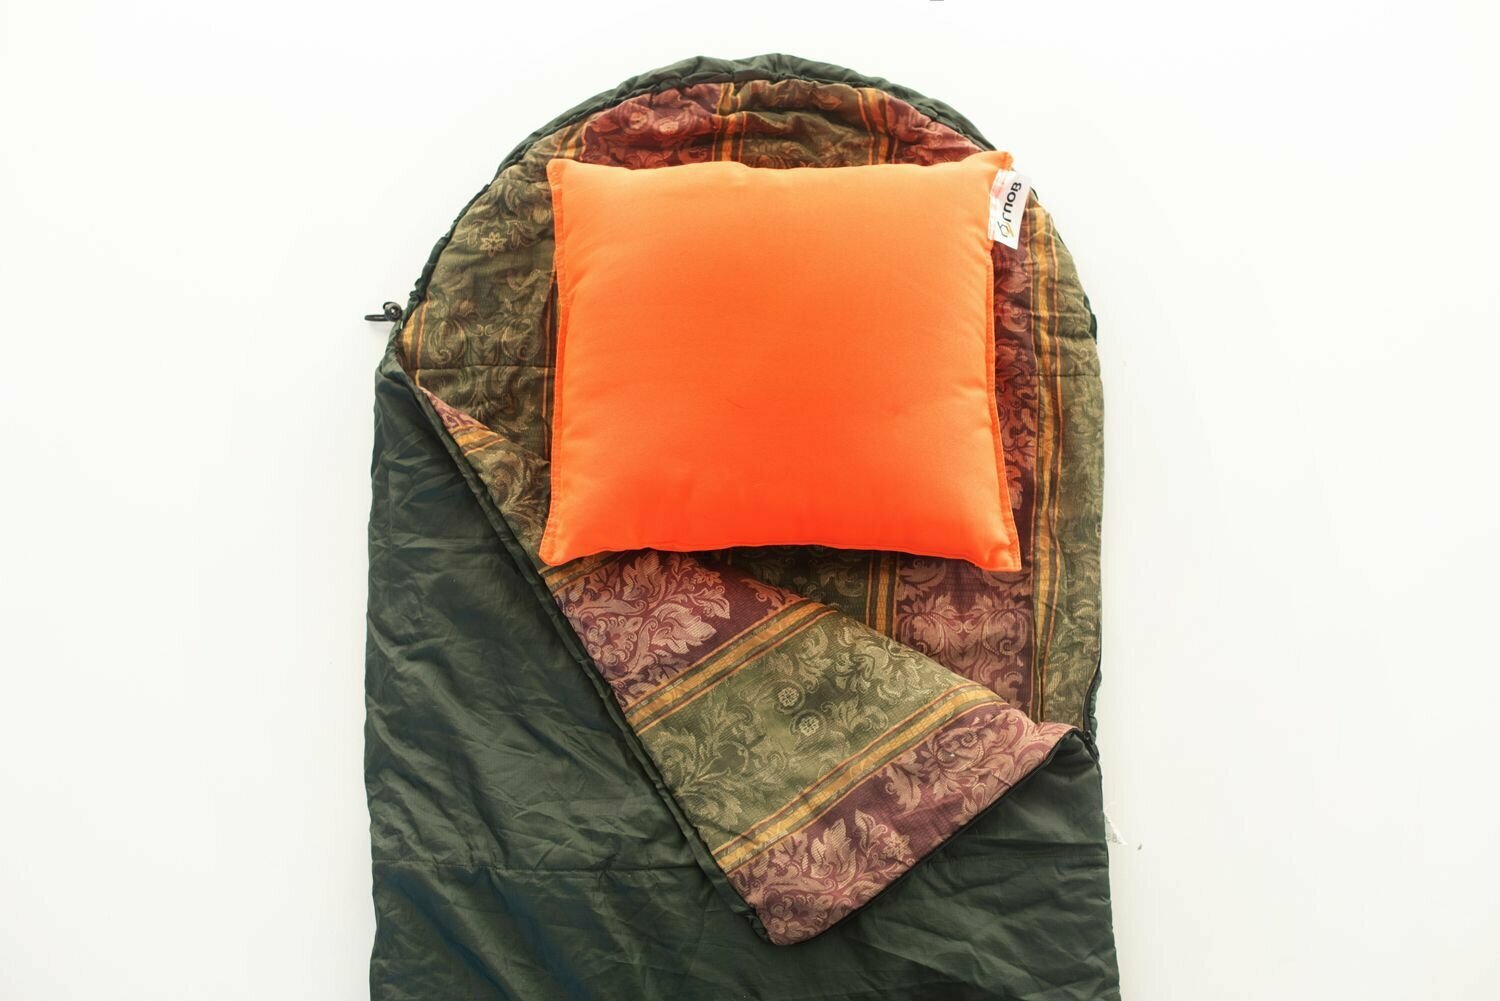 Подушка туристическая "6 Углов" 50х40х15см для спального мешка, одеяла, палатки, походная, оранжевая